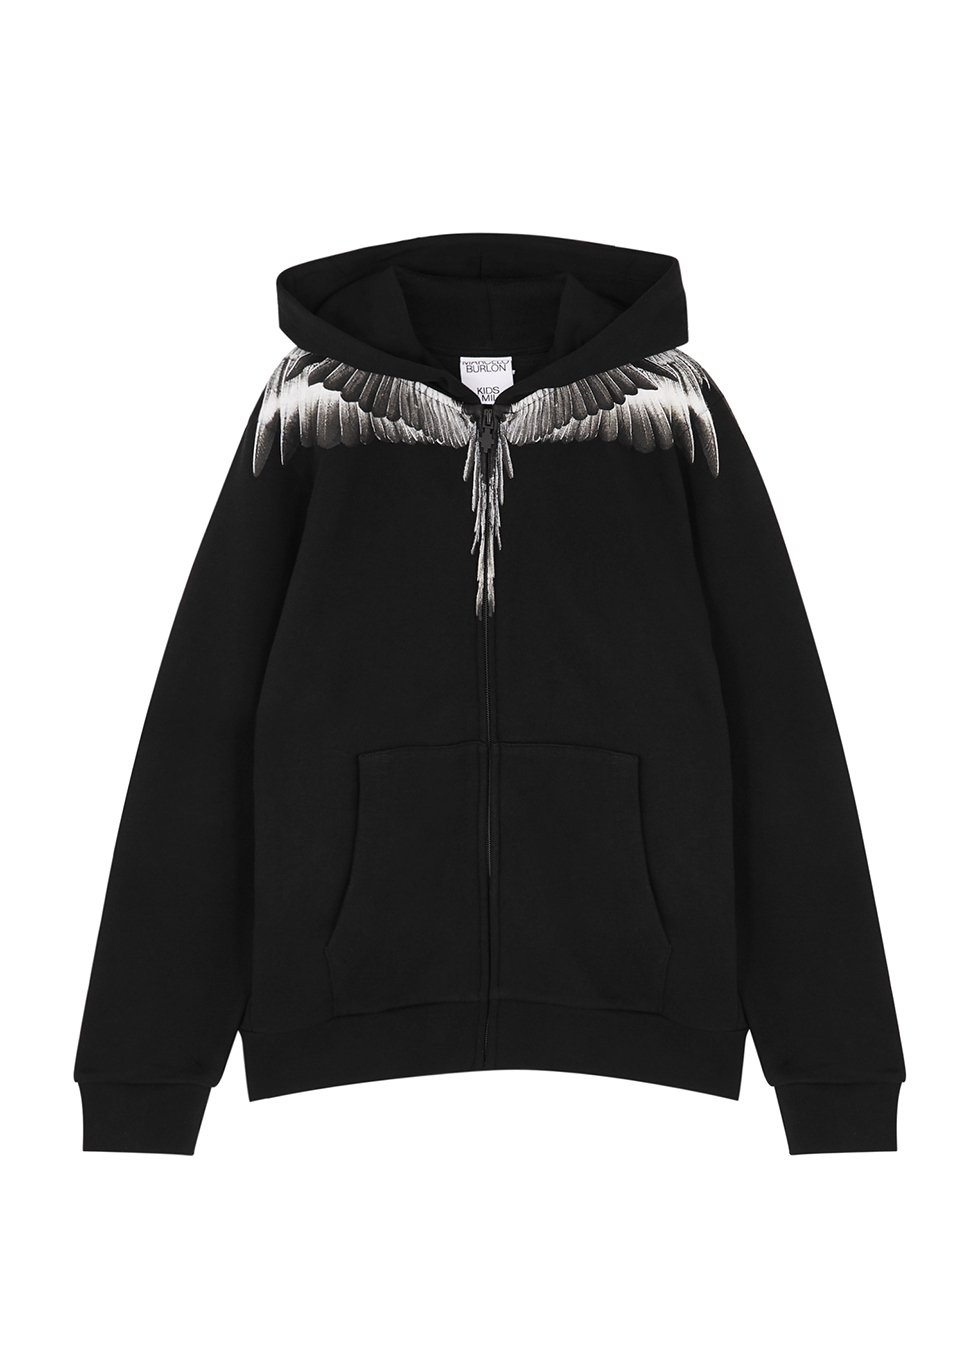 KIDS Wings black hooded cotton-blend sweatshirt (4-12 years)